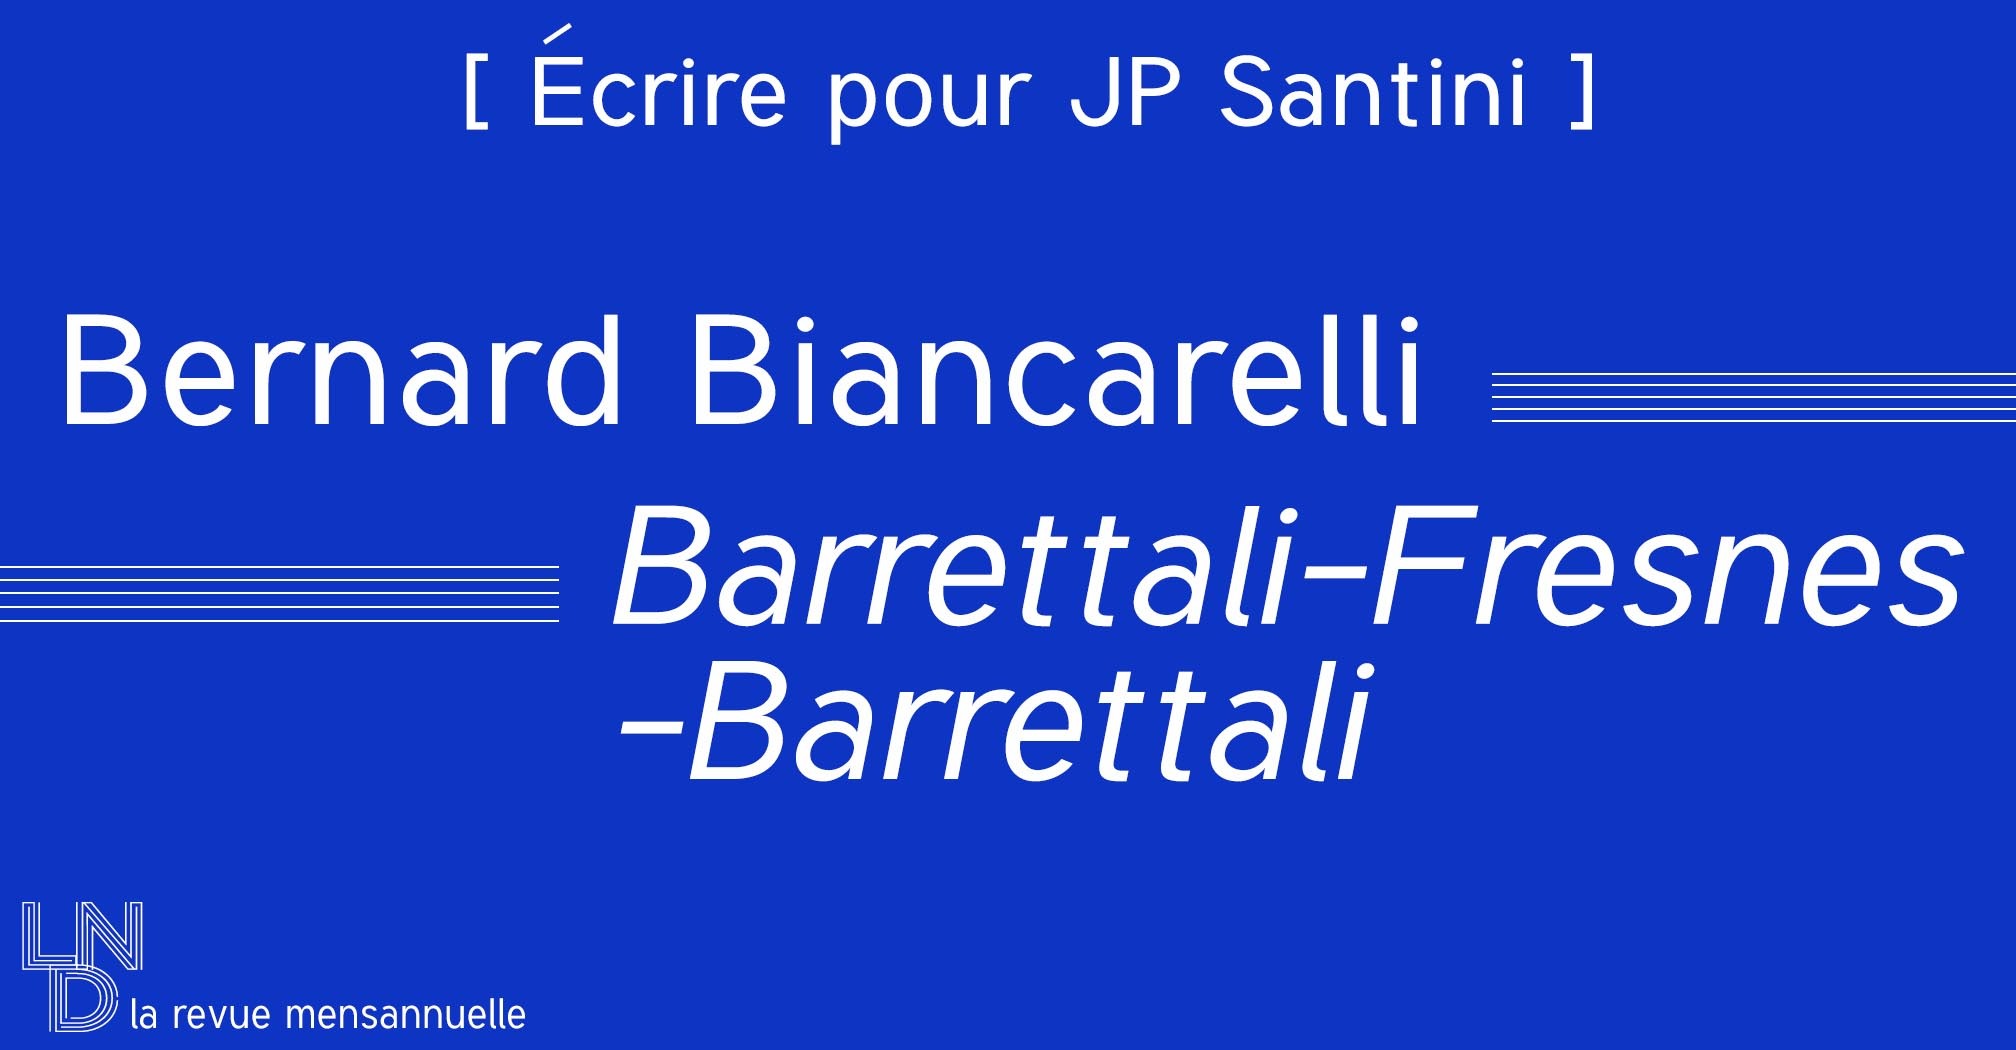 [ Écrire pour JP Santini ] Bernard Biancarelli - Barrettali-Fresnes-Barrettali